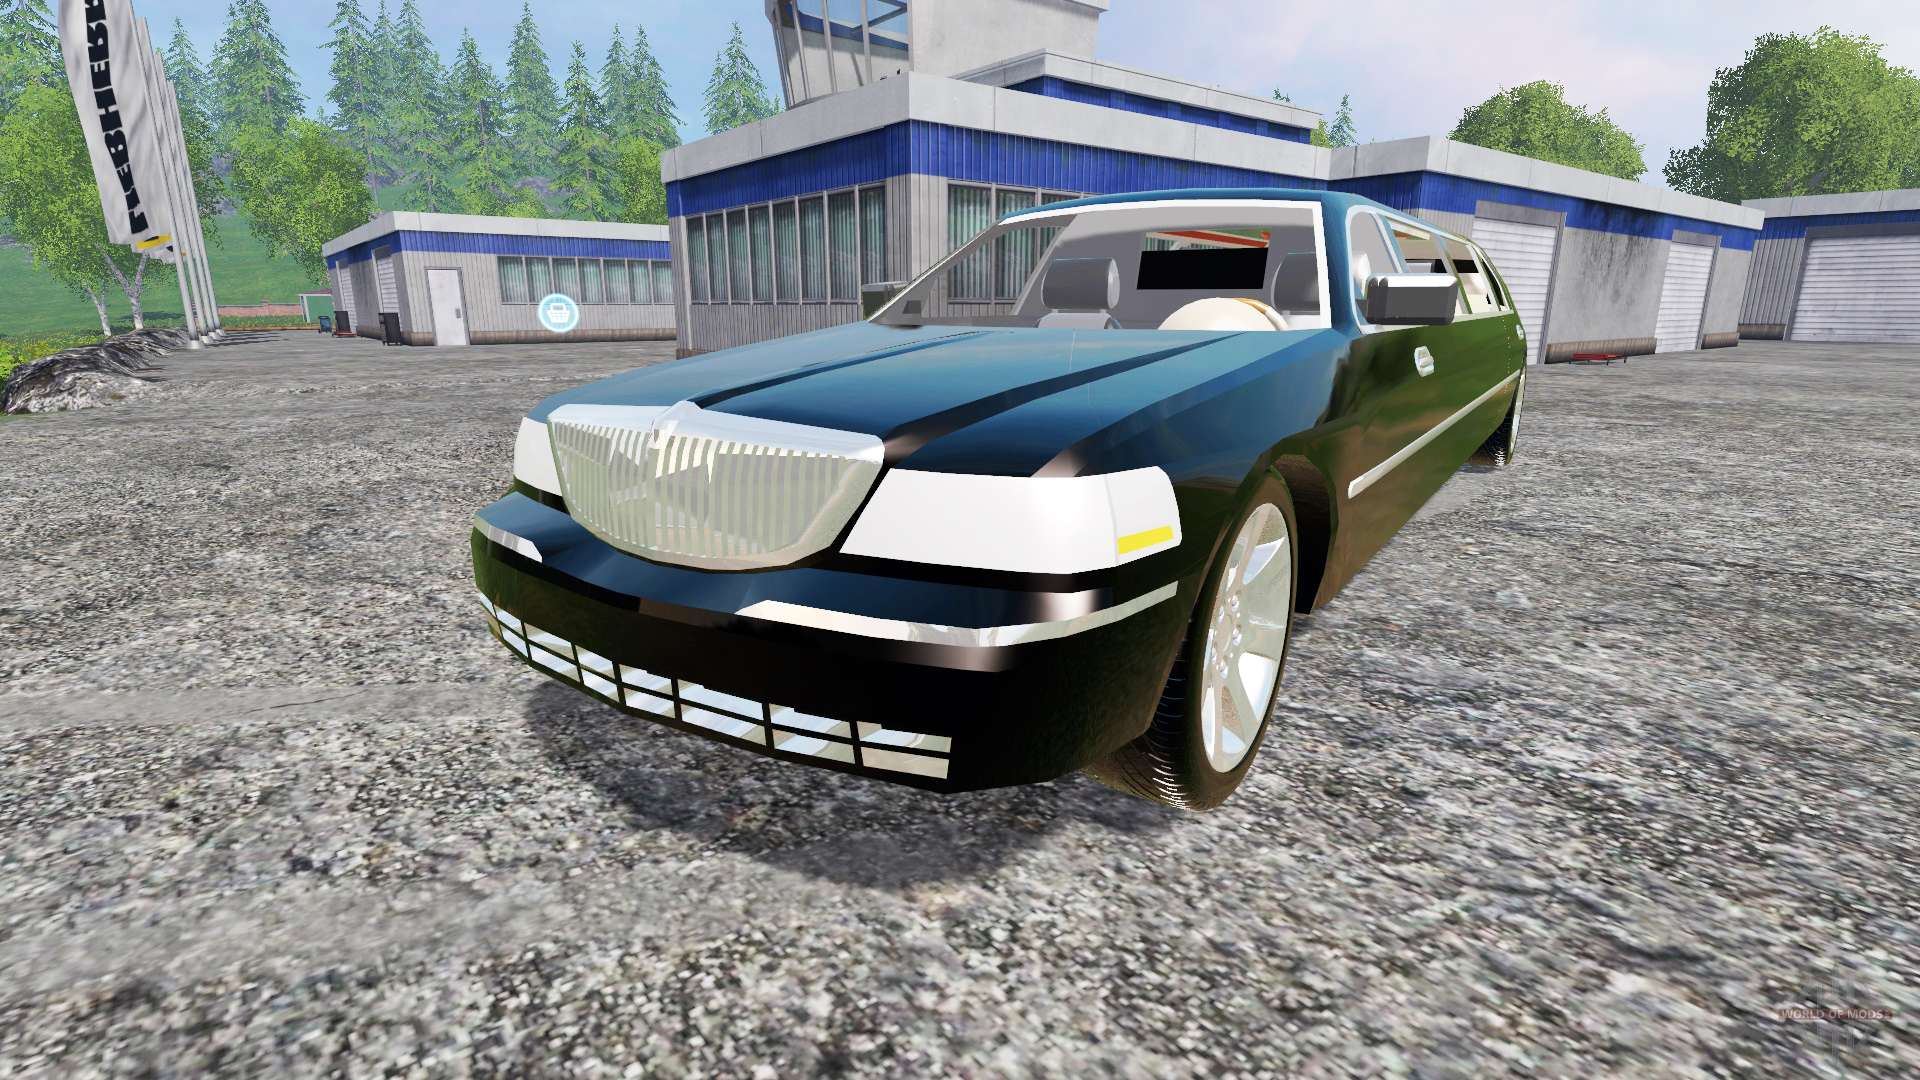 Town Car Simulator